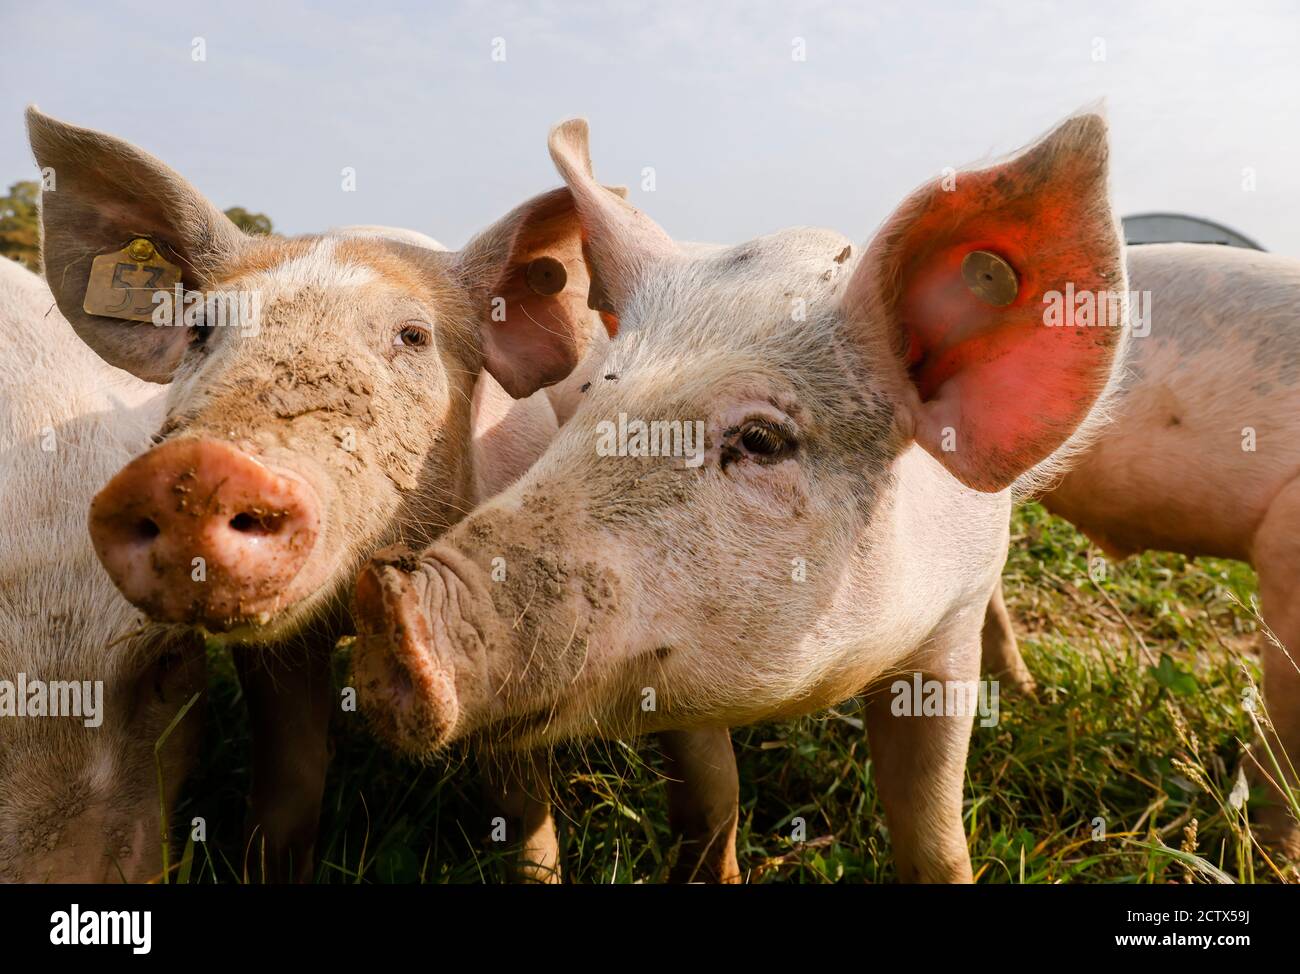 Kamp-Lintfort, Nordrhein-Westfalen, Deutschland - Bio-Landwirtschaft NRW, Bio-Schweine, Weideschweine, Outdoor-Schweine leben auf dem Bioland-Bauernhof Frohnenbruch A Stockfoto